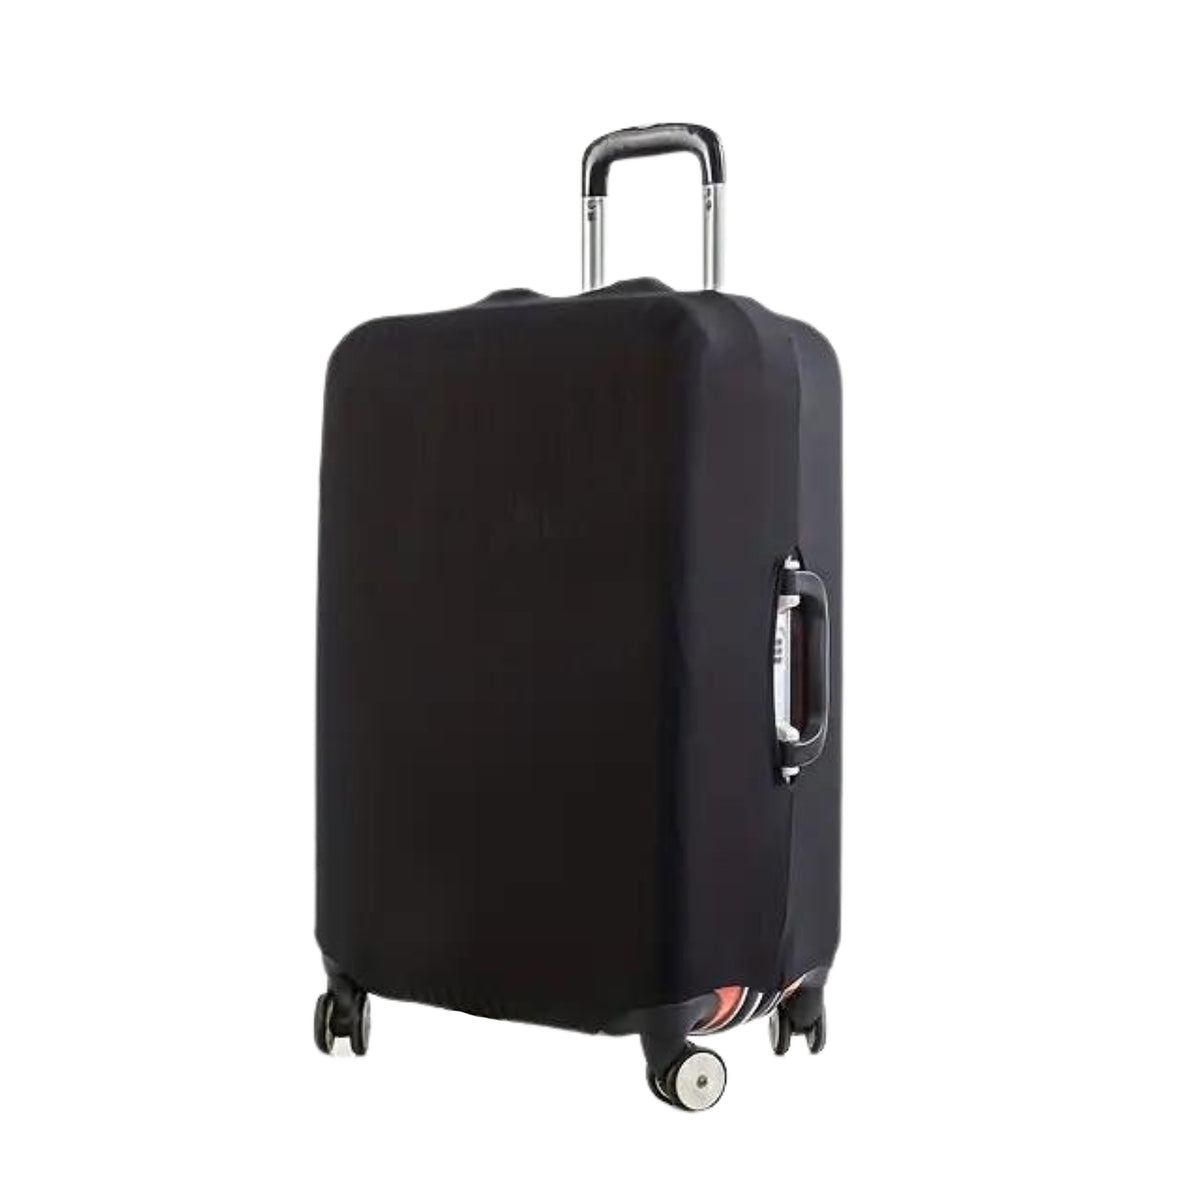 Luggage cover Medium,Black